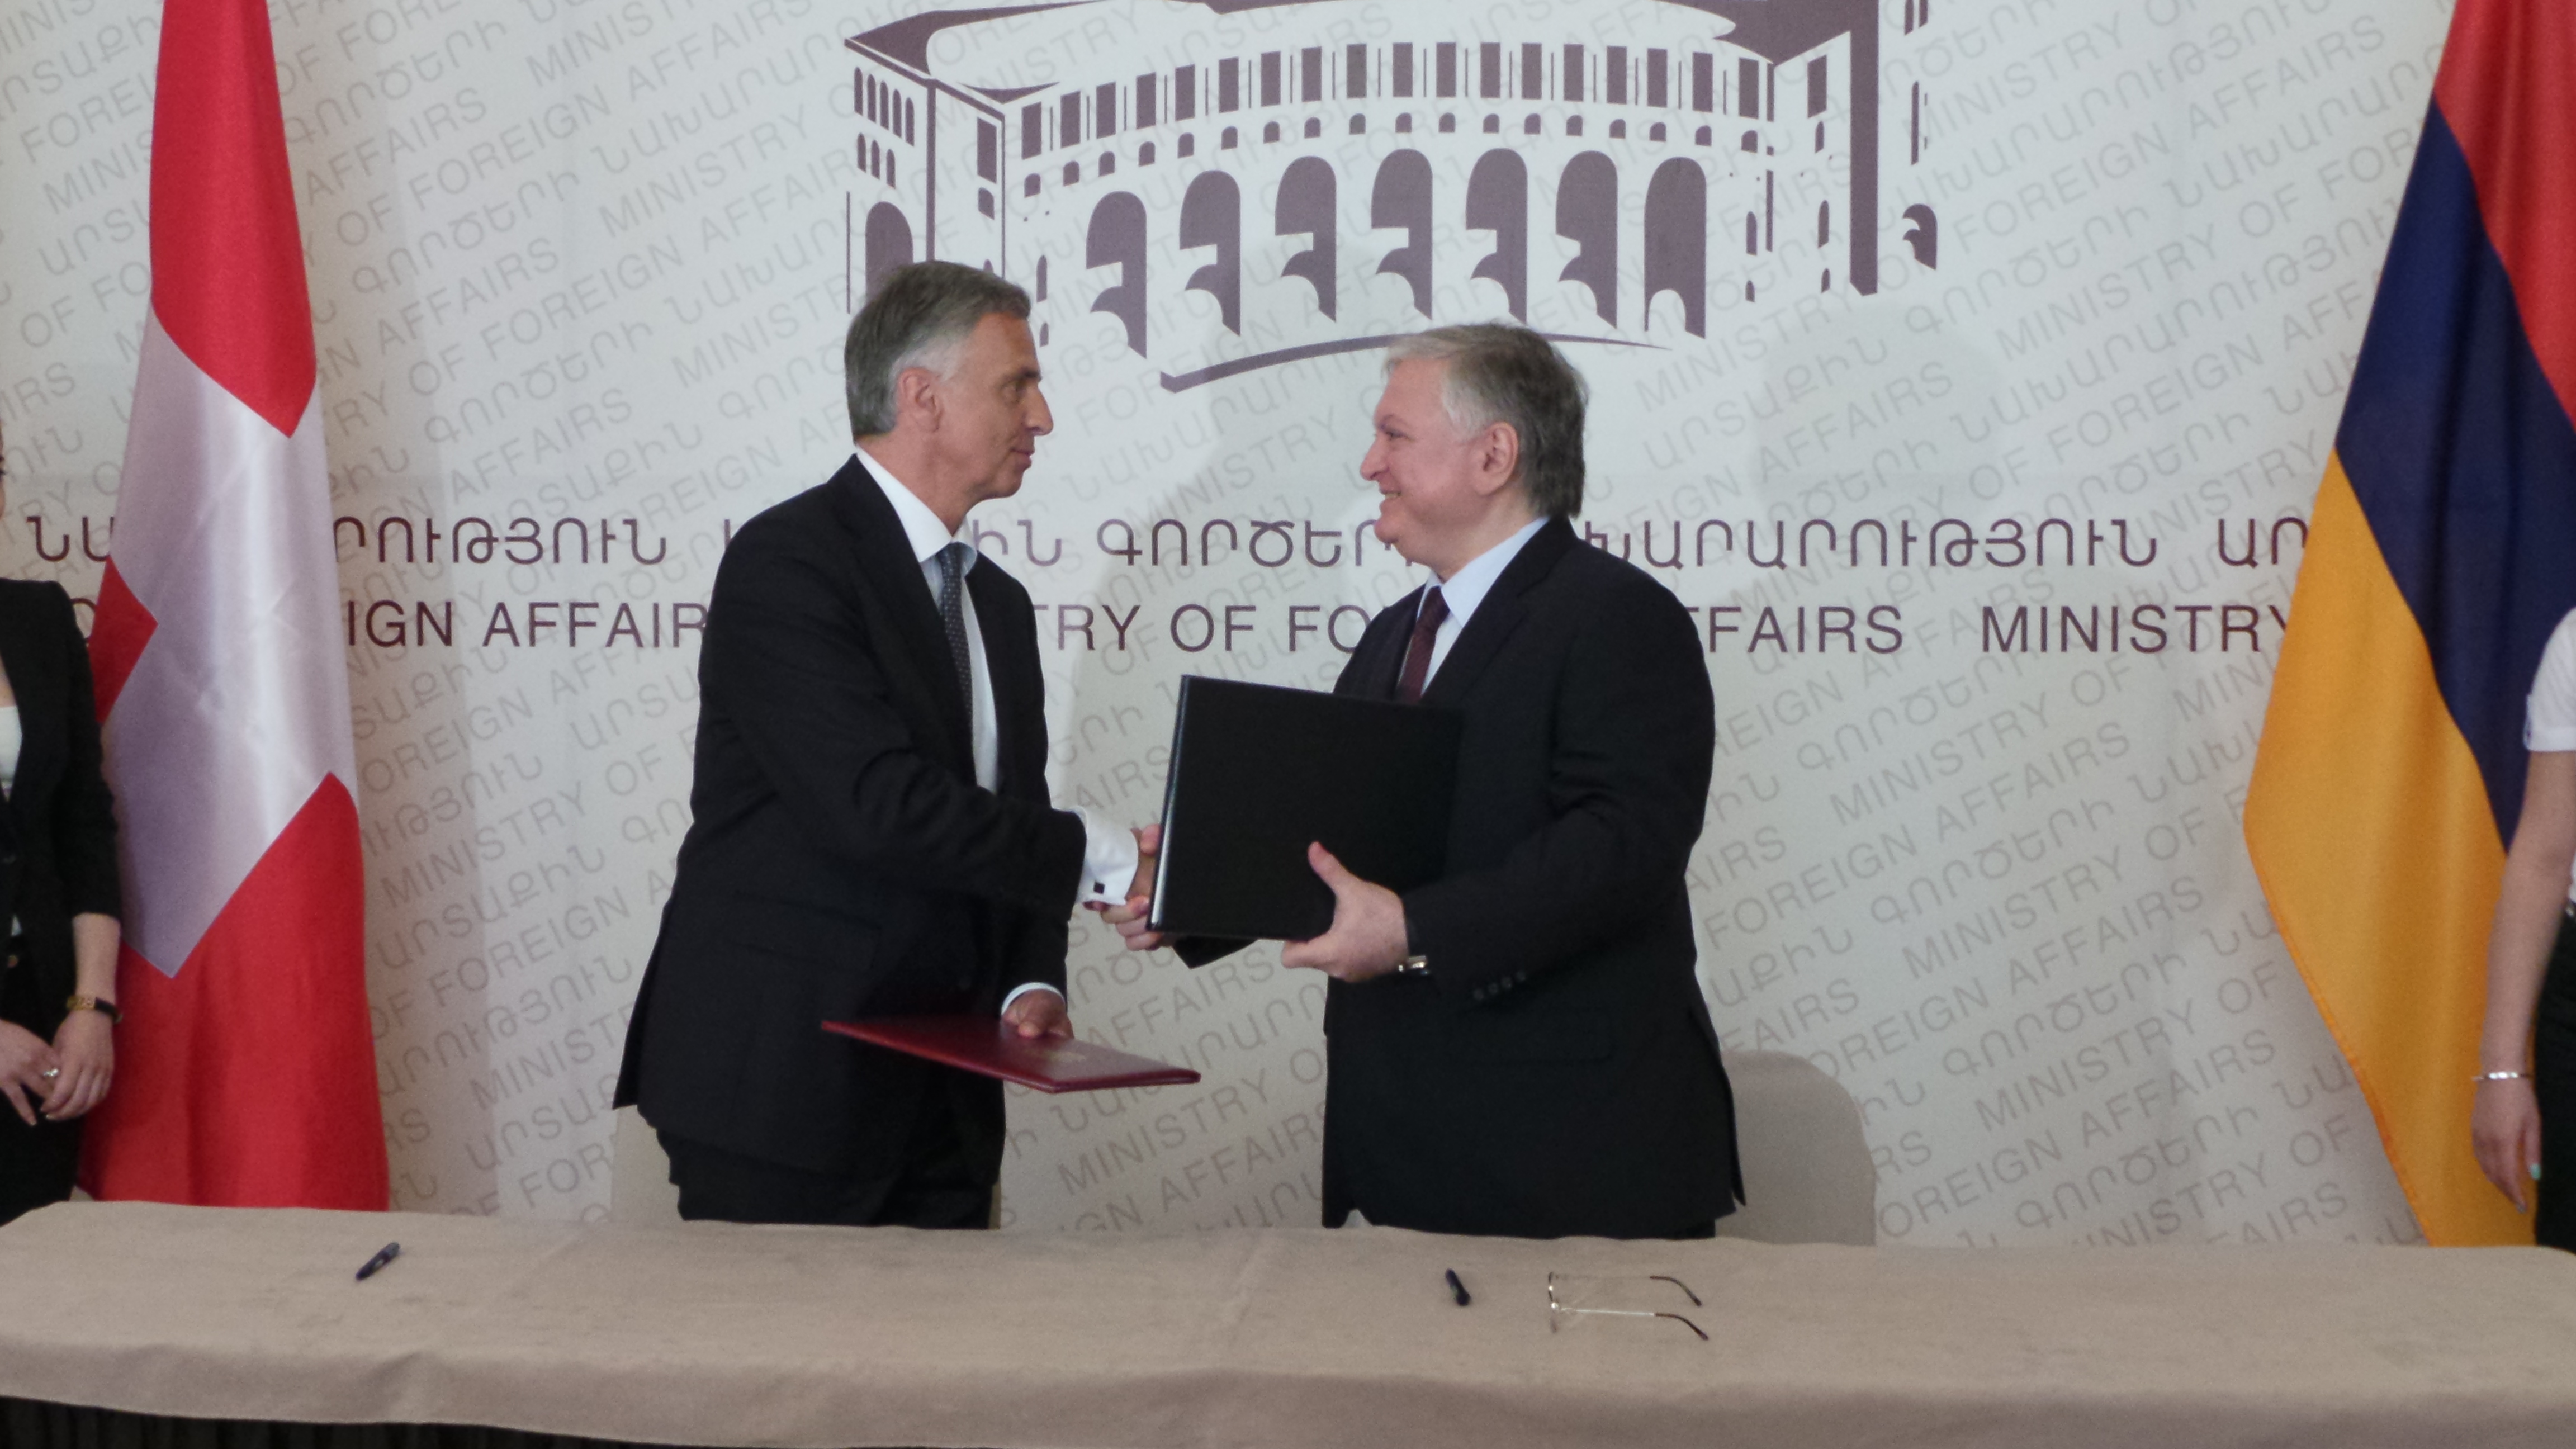 Il presidente della Confederazione Didier Burkhalter ha sottoscritto con il ministro degli esteri Edward Nalbandian un accordo per la cooperazione tra i ministeri degli esteri di entrambi i Paesi.